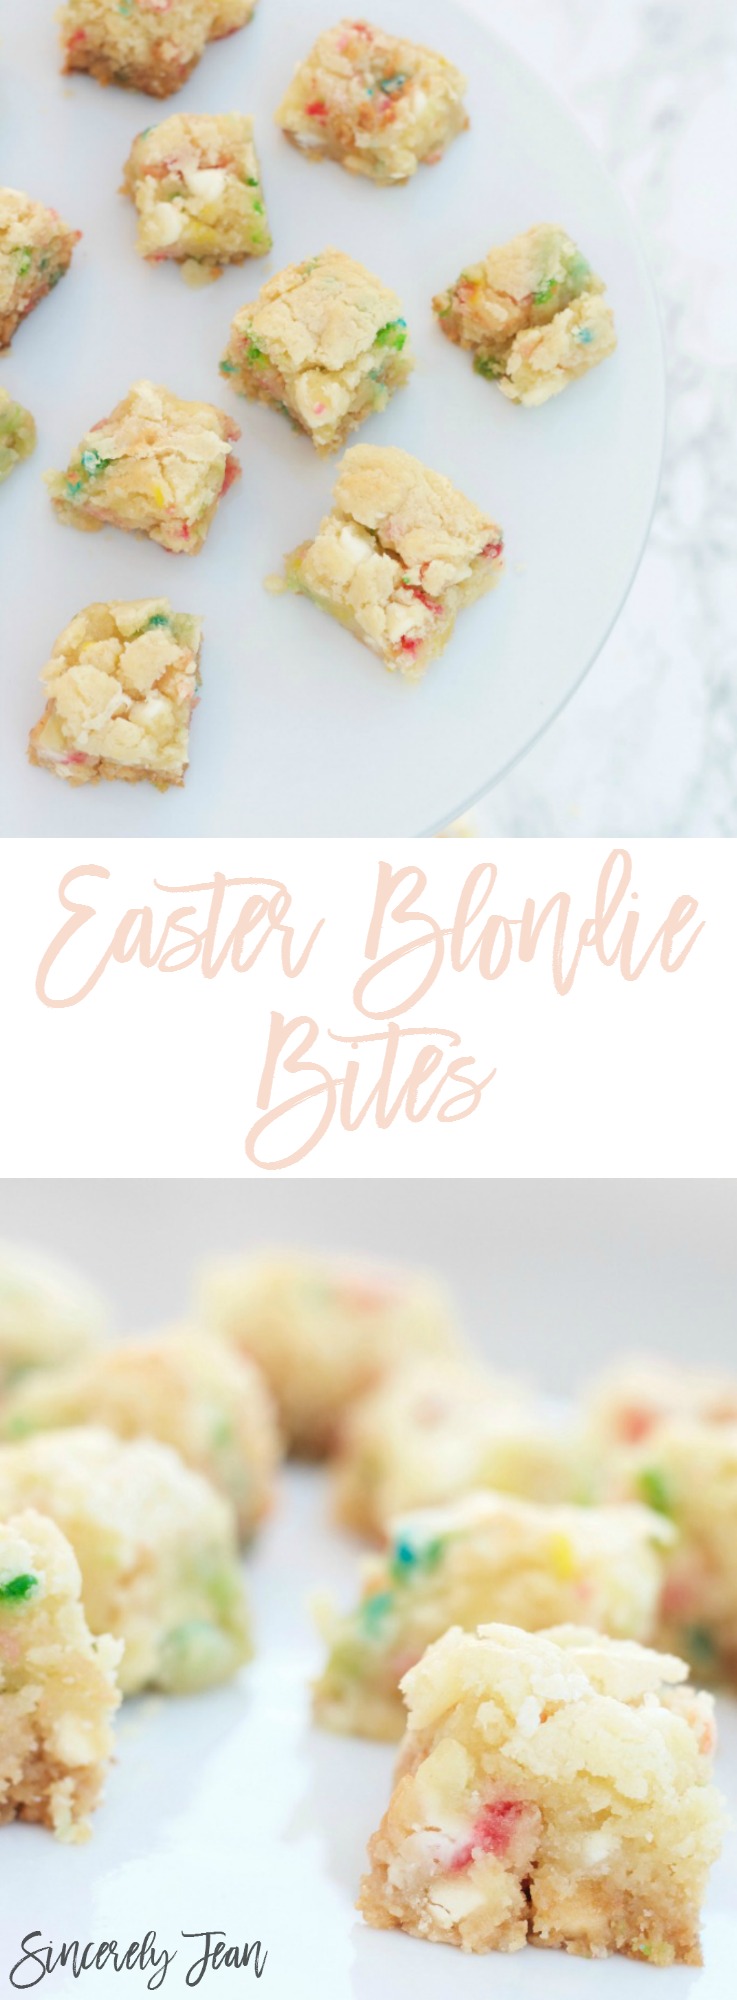 Easter Dessert - Easter Blondie Bites - dessert, easy, simple, holiday, easter | www.SincerelyJean.com